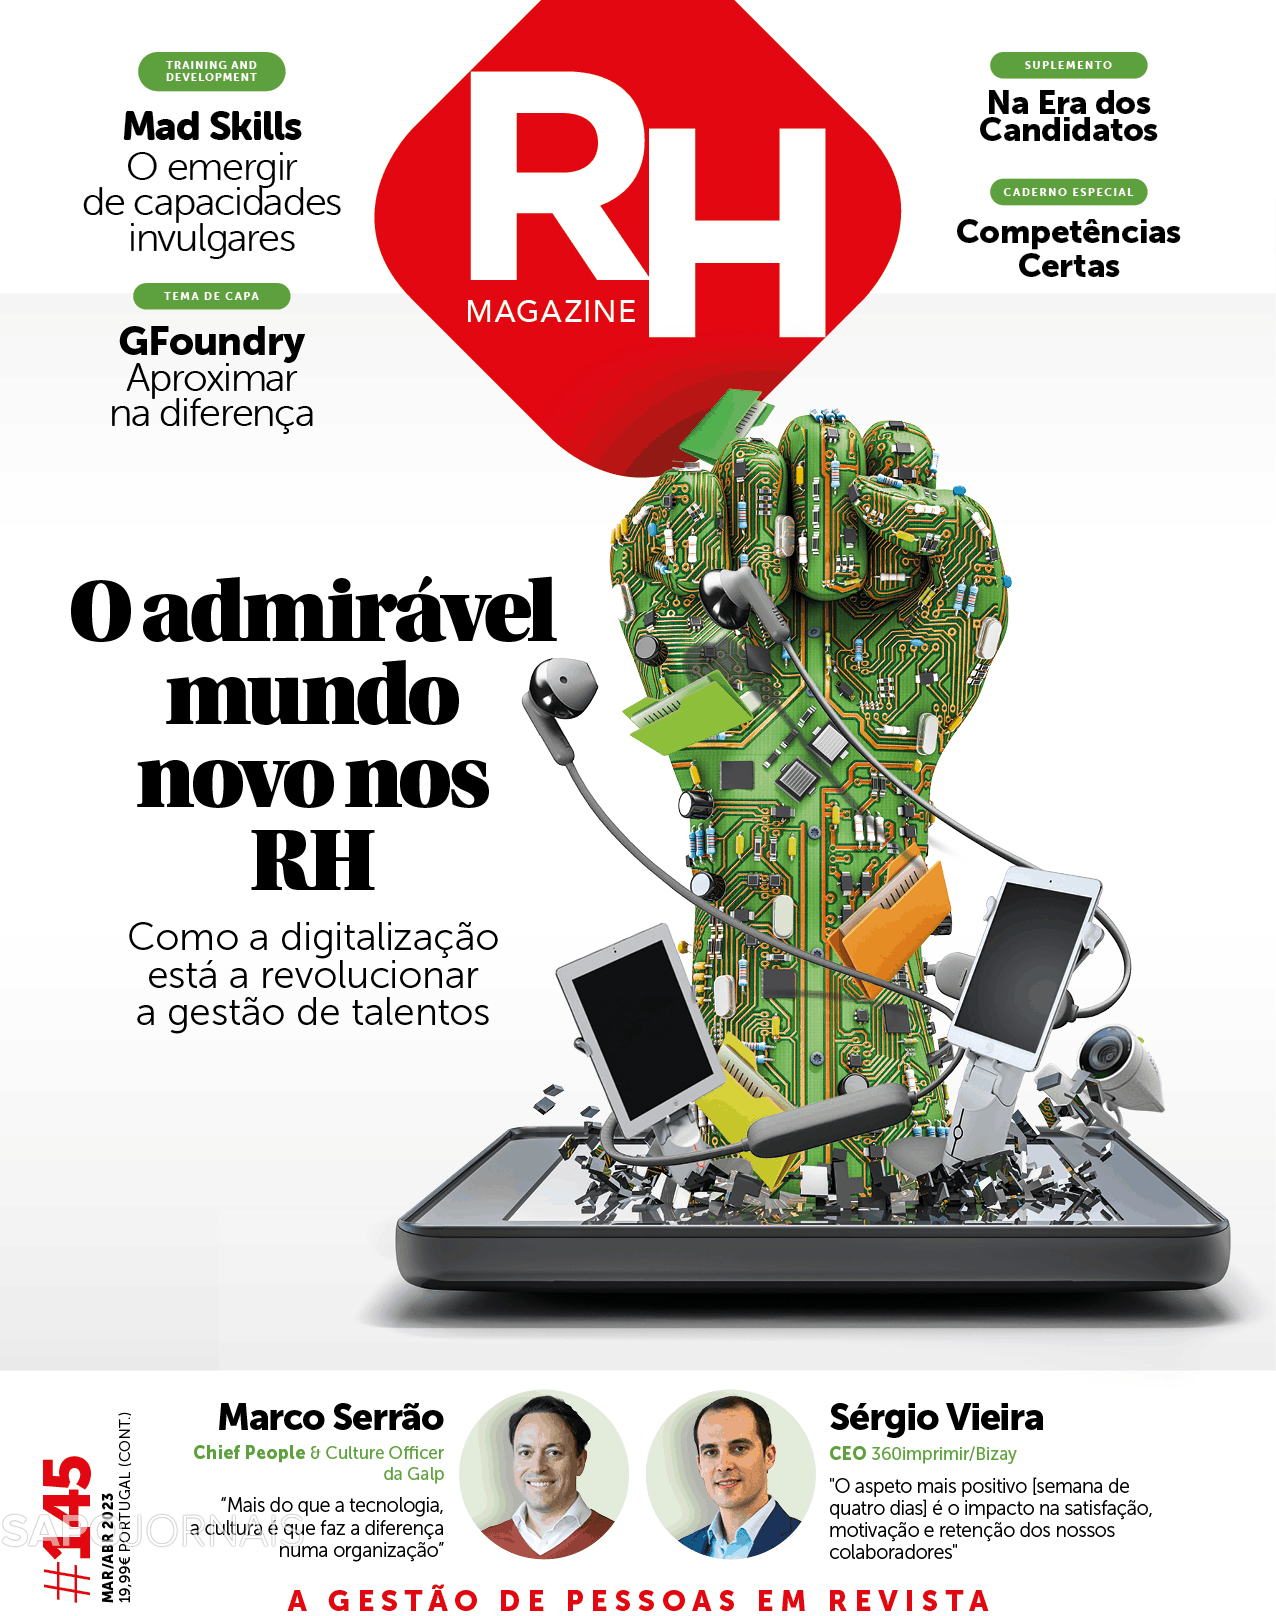 RH Magazine